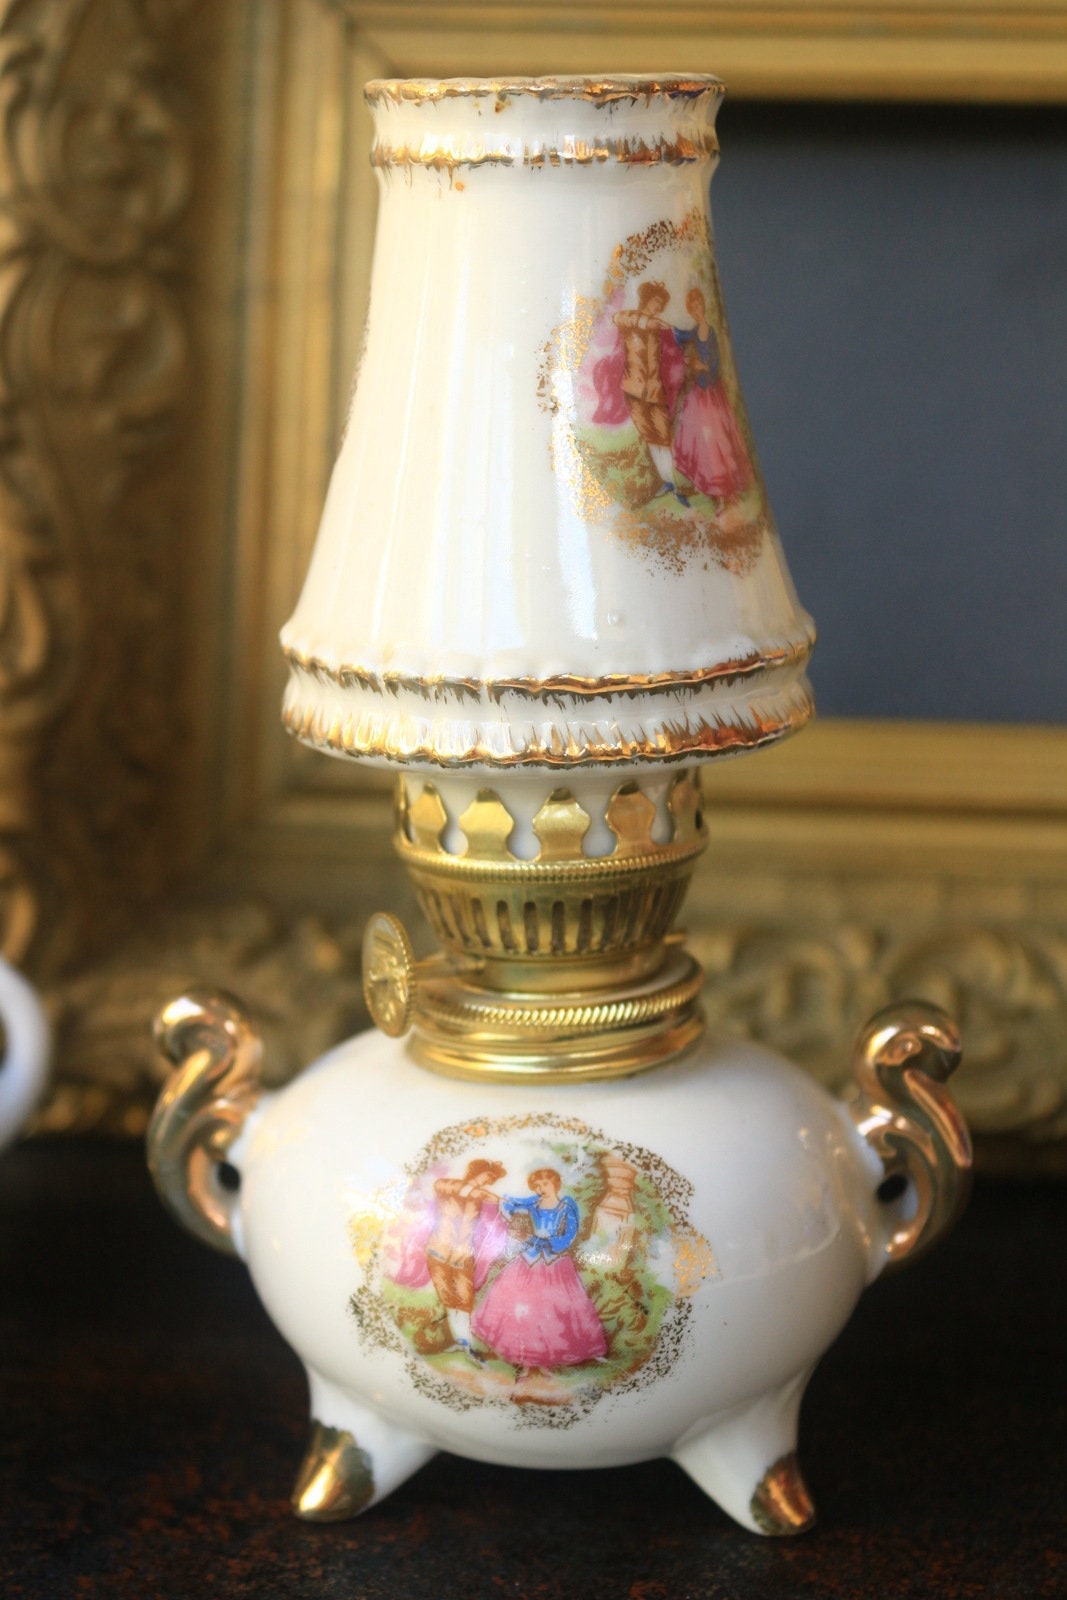 Petite Lampe Vintage à Pétrole/Huile - Set ou Unique - Réplique Ancienne - Maison Des Poupées - Deco